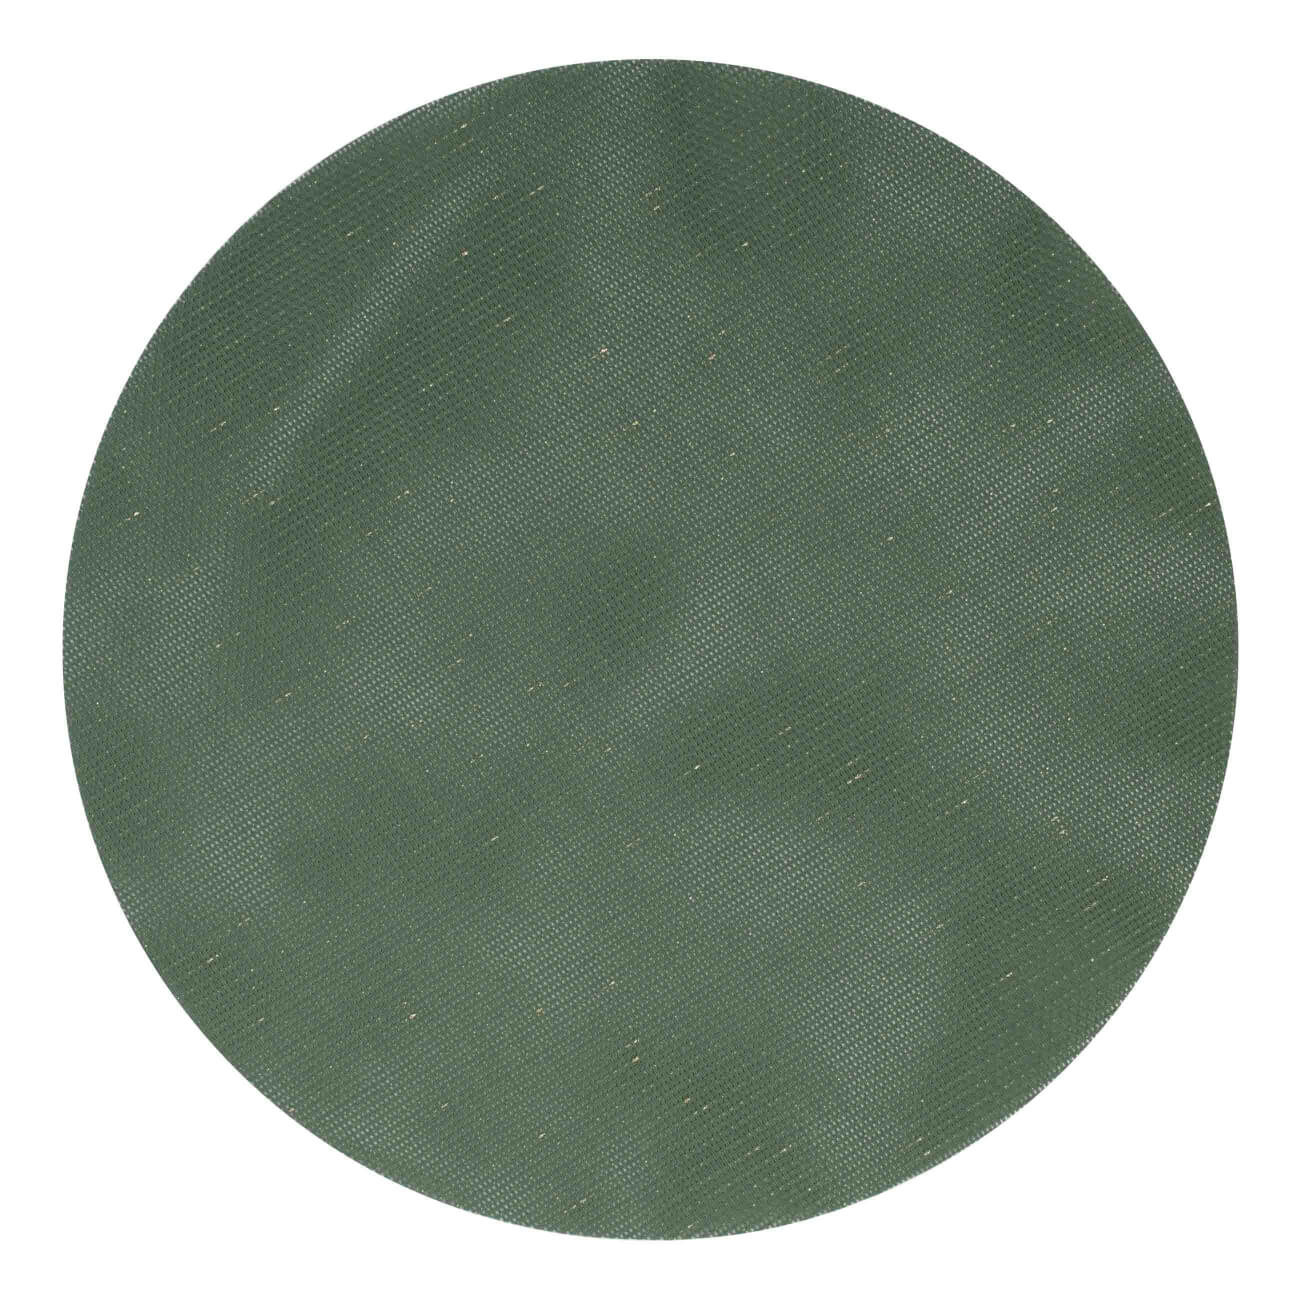 Салфетка под приборы, 38 см, ПВХ/полиэстер, круглая, зеленая, Solid изображение № 1